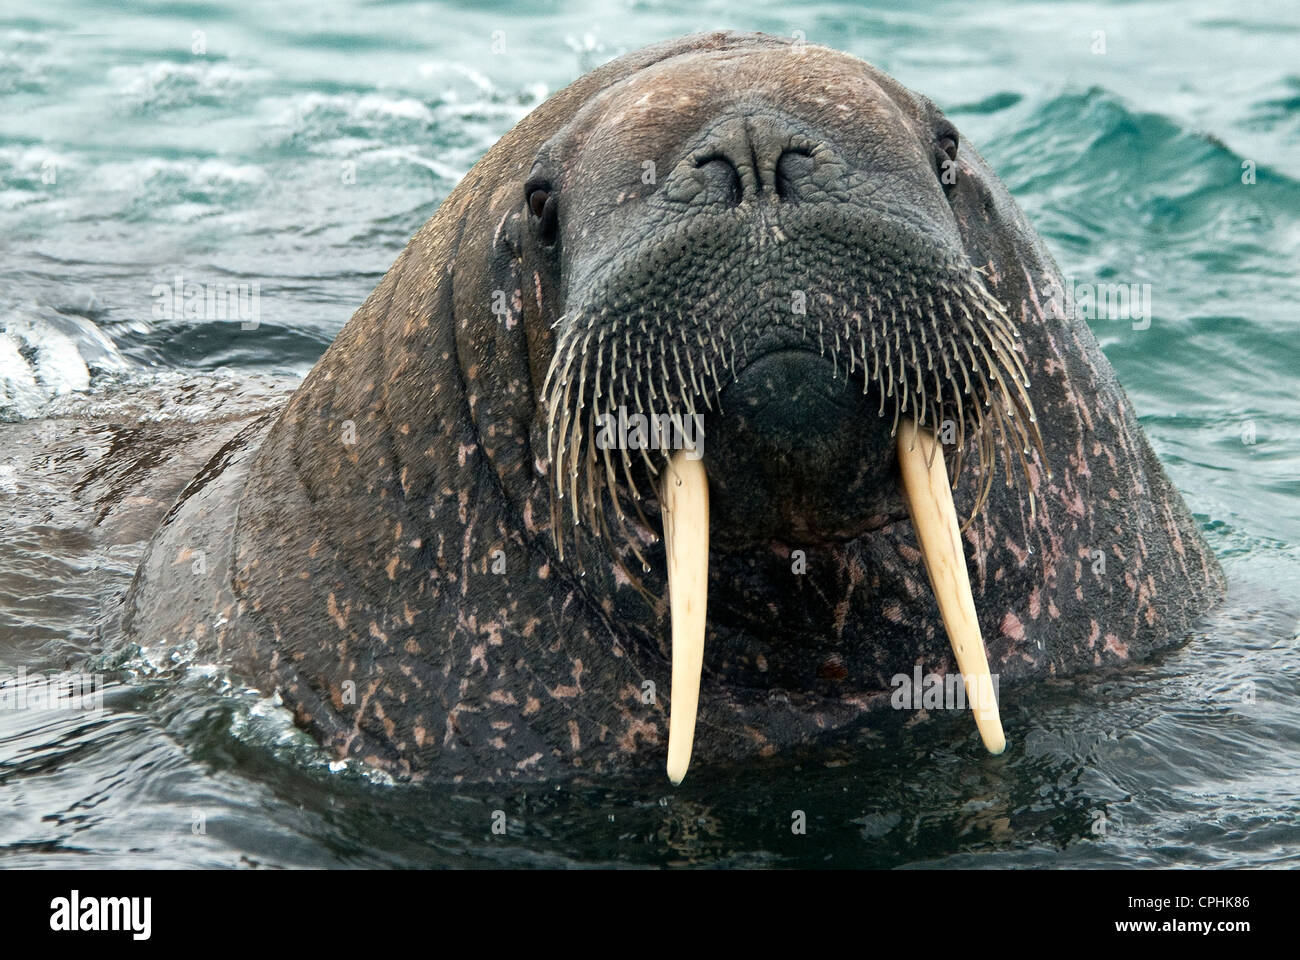 North Atlantic Walrus Odobenus rosmarus Nordaustland Svalbard Norway Stock Photo